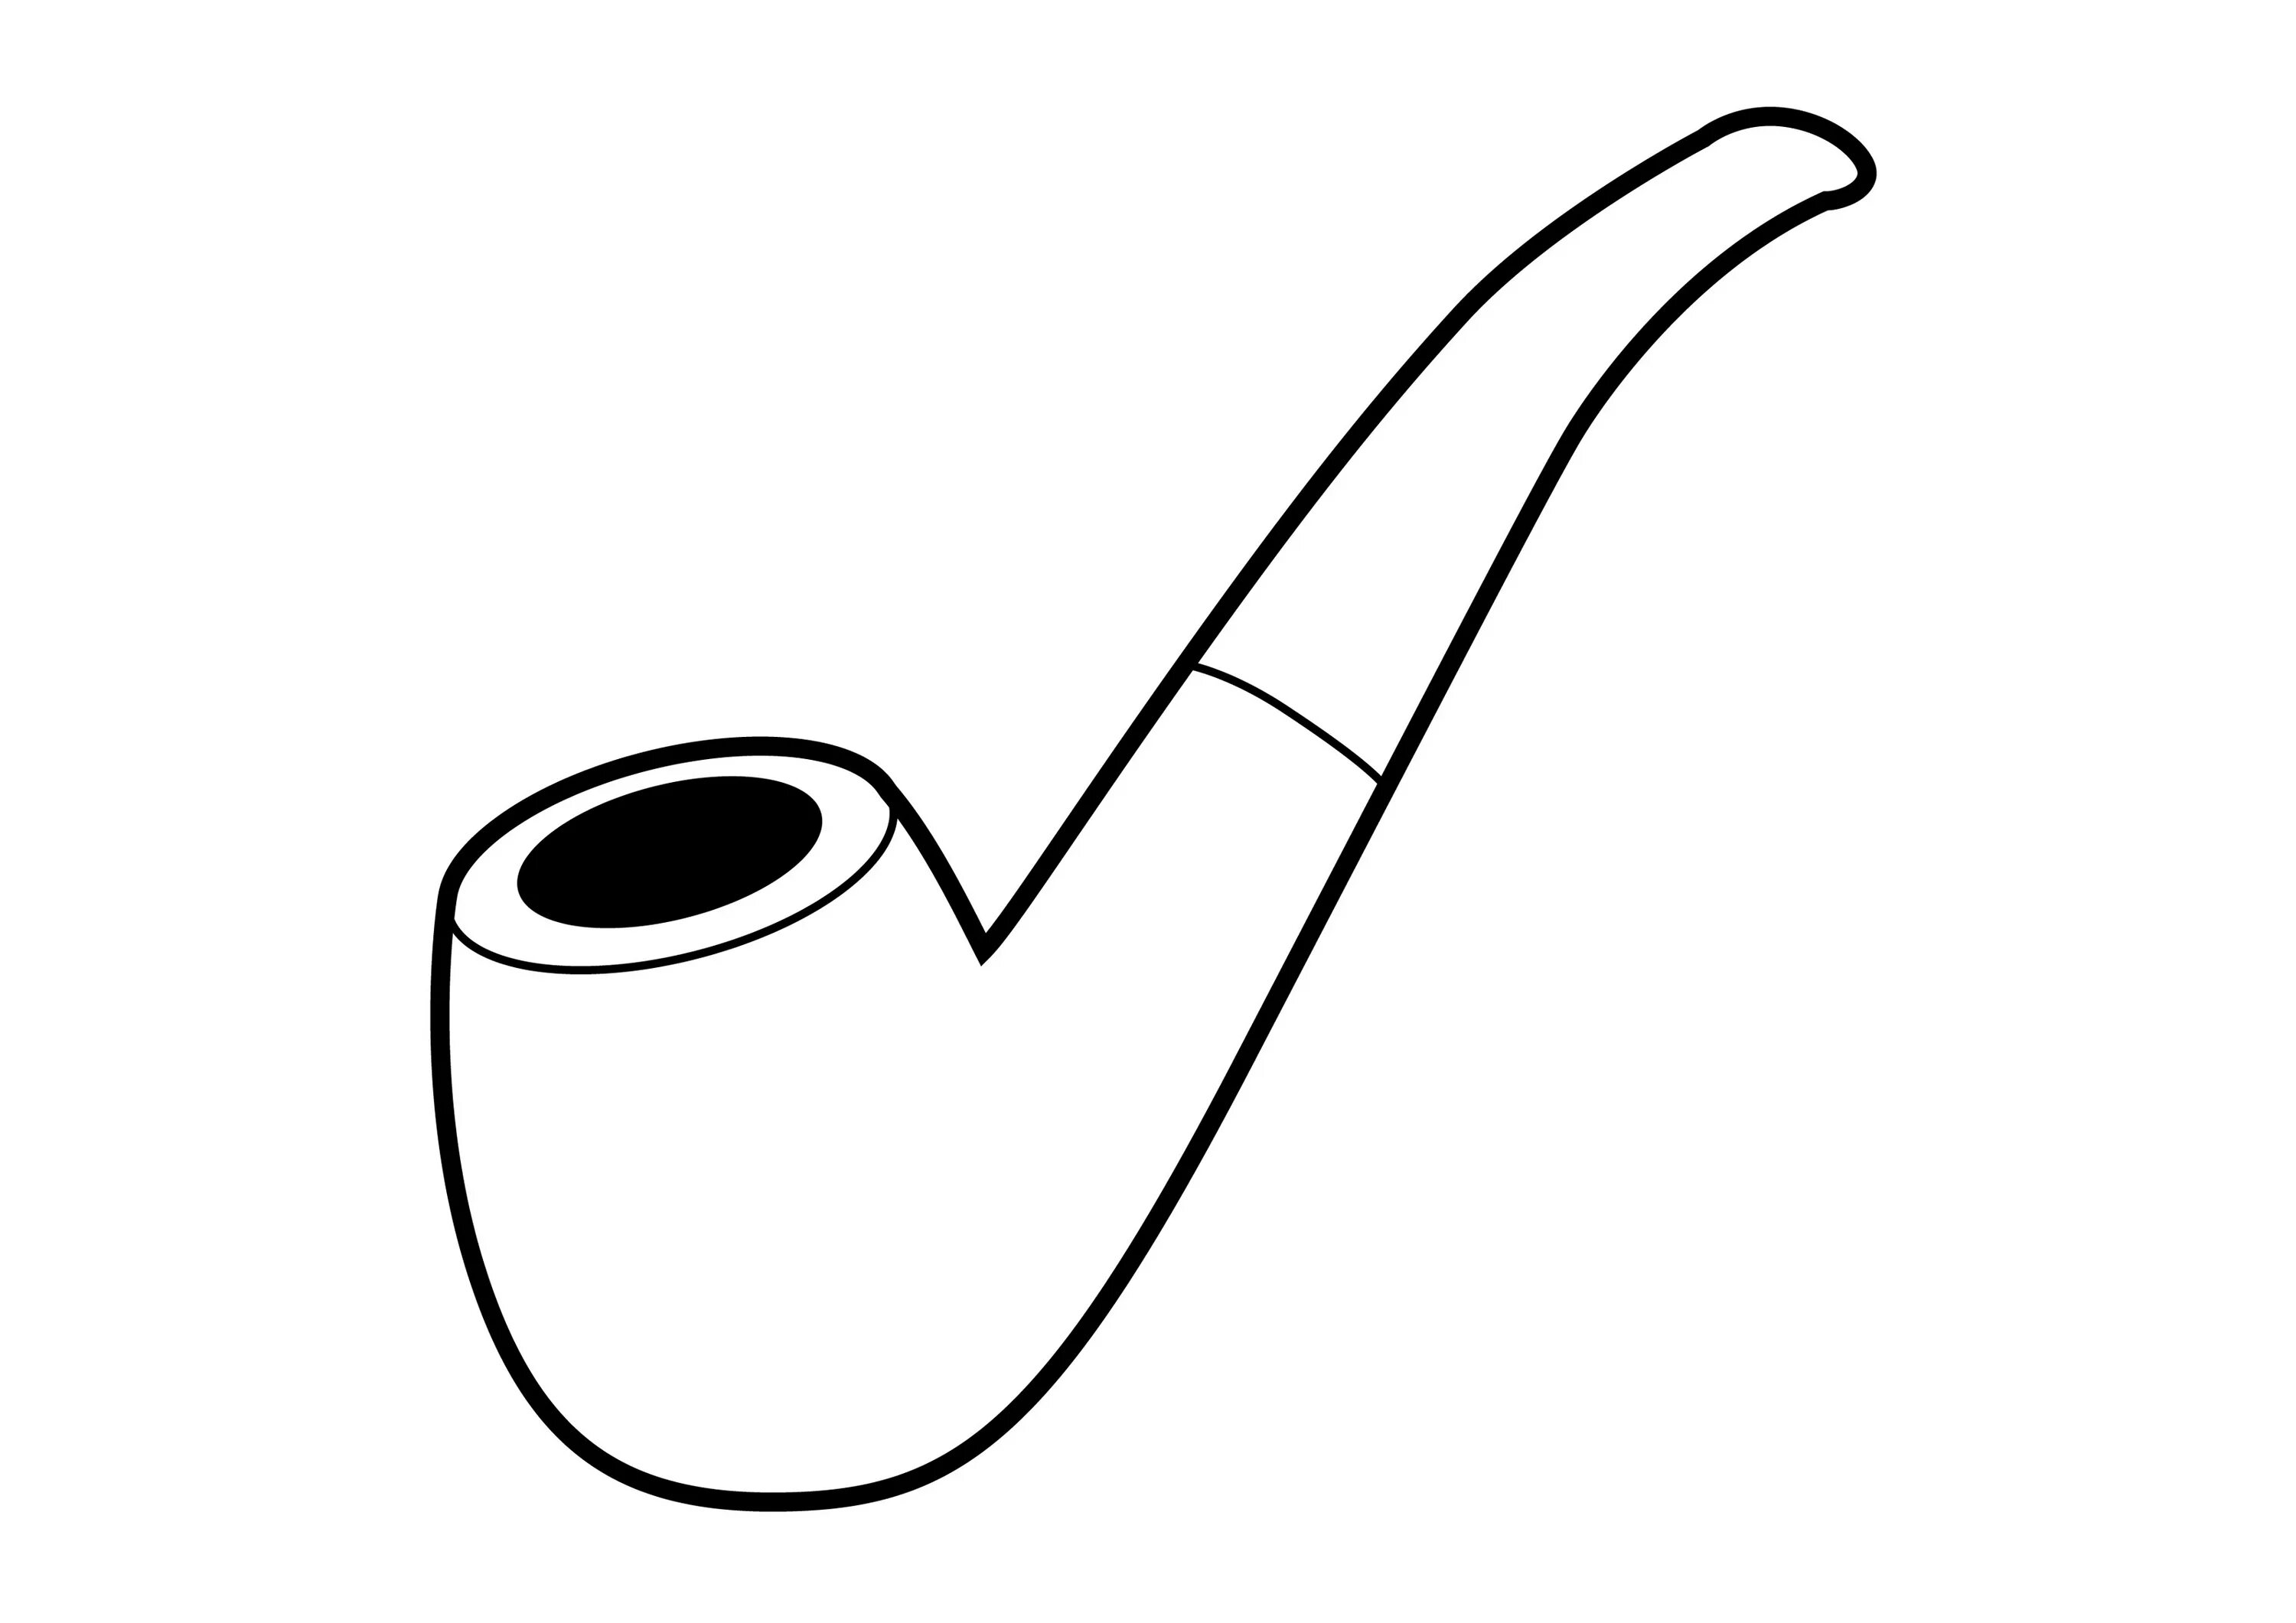 Трубка трубочка. Курительная трубка вектор. Трубка для курения. Нарисованная трубка для курения. Трубка трафарет.